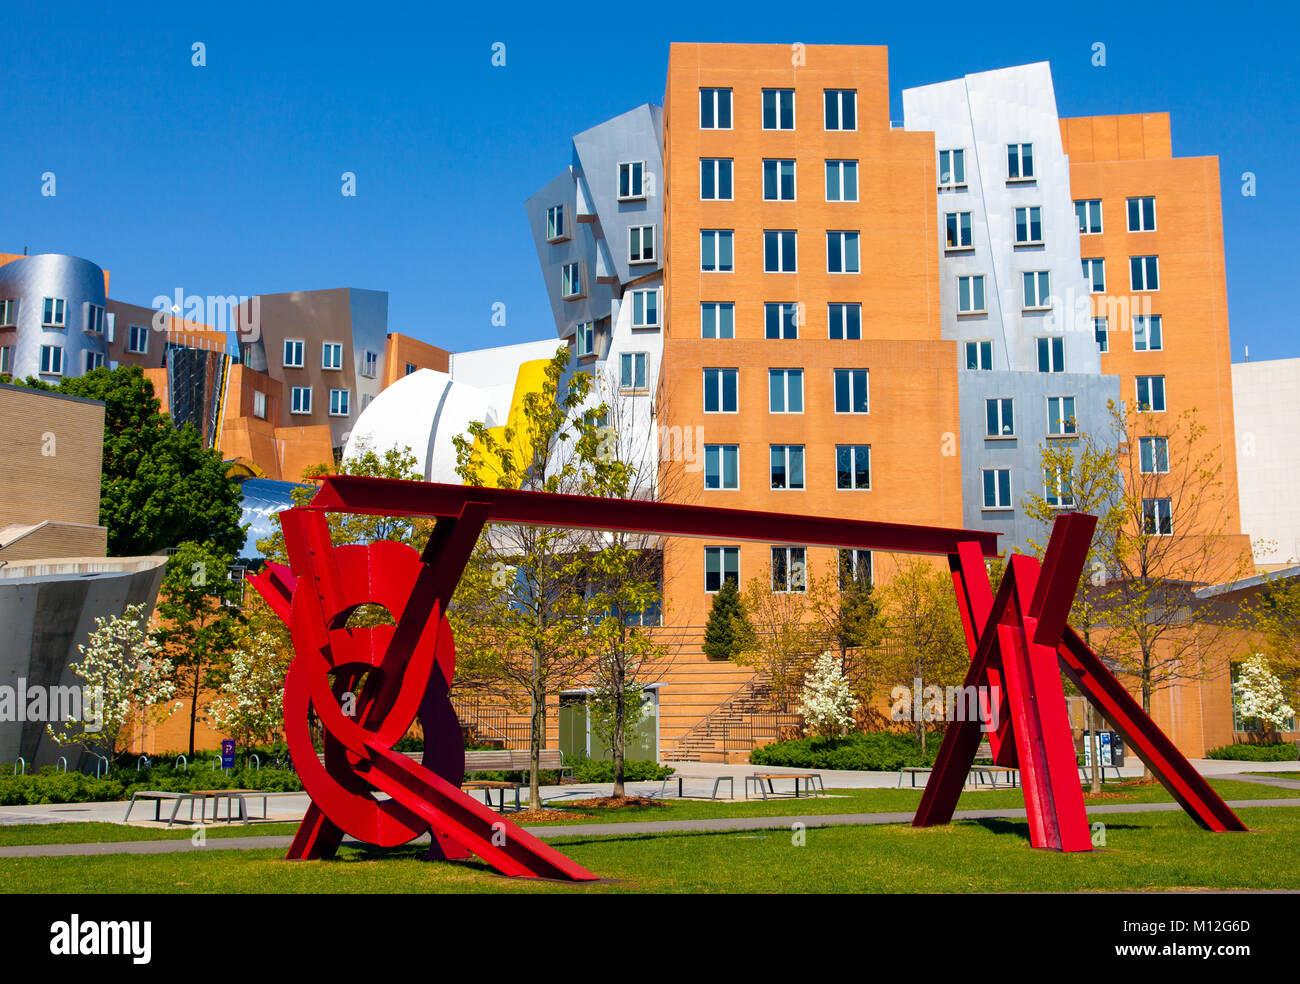 MIT Campus escultura metálica roja por el artista Mark di Suvero en primer plano y la icónica Stata Center por el arquitecto Frank Gehry en el fondo Foto de stock